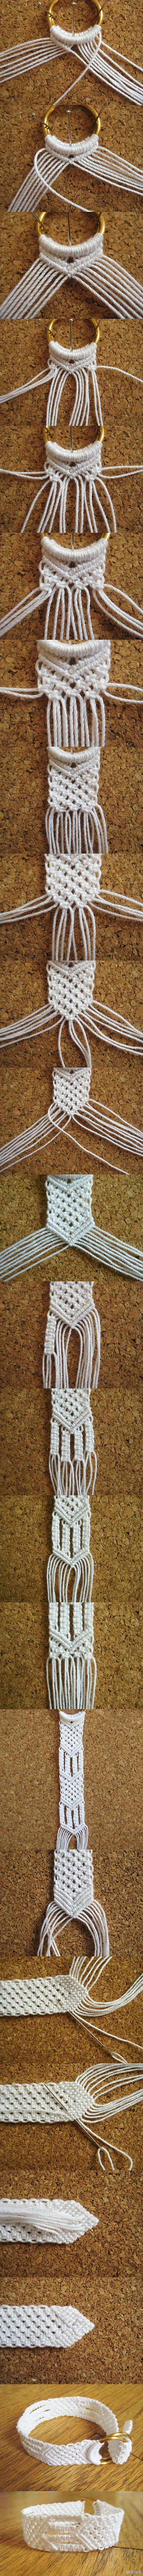 编织绳,棉绳编织女生手镯  腰带手工编织...